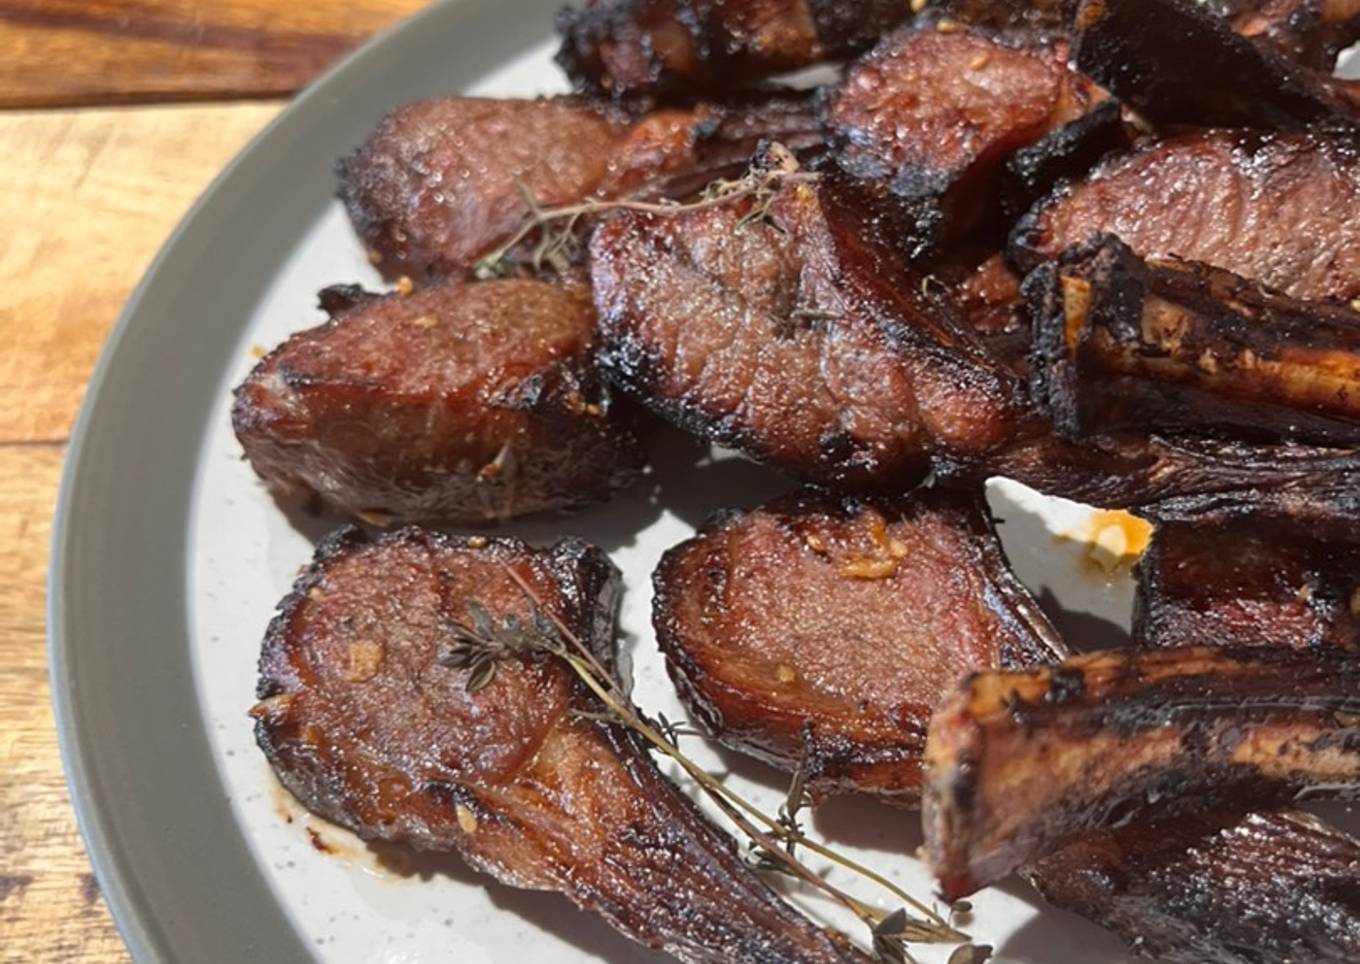 20-minute Air fried lamb ribs 😋